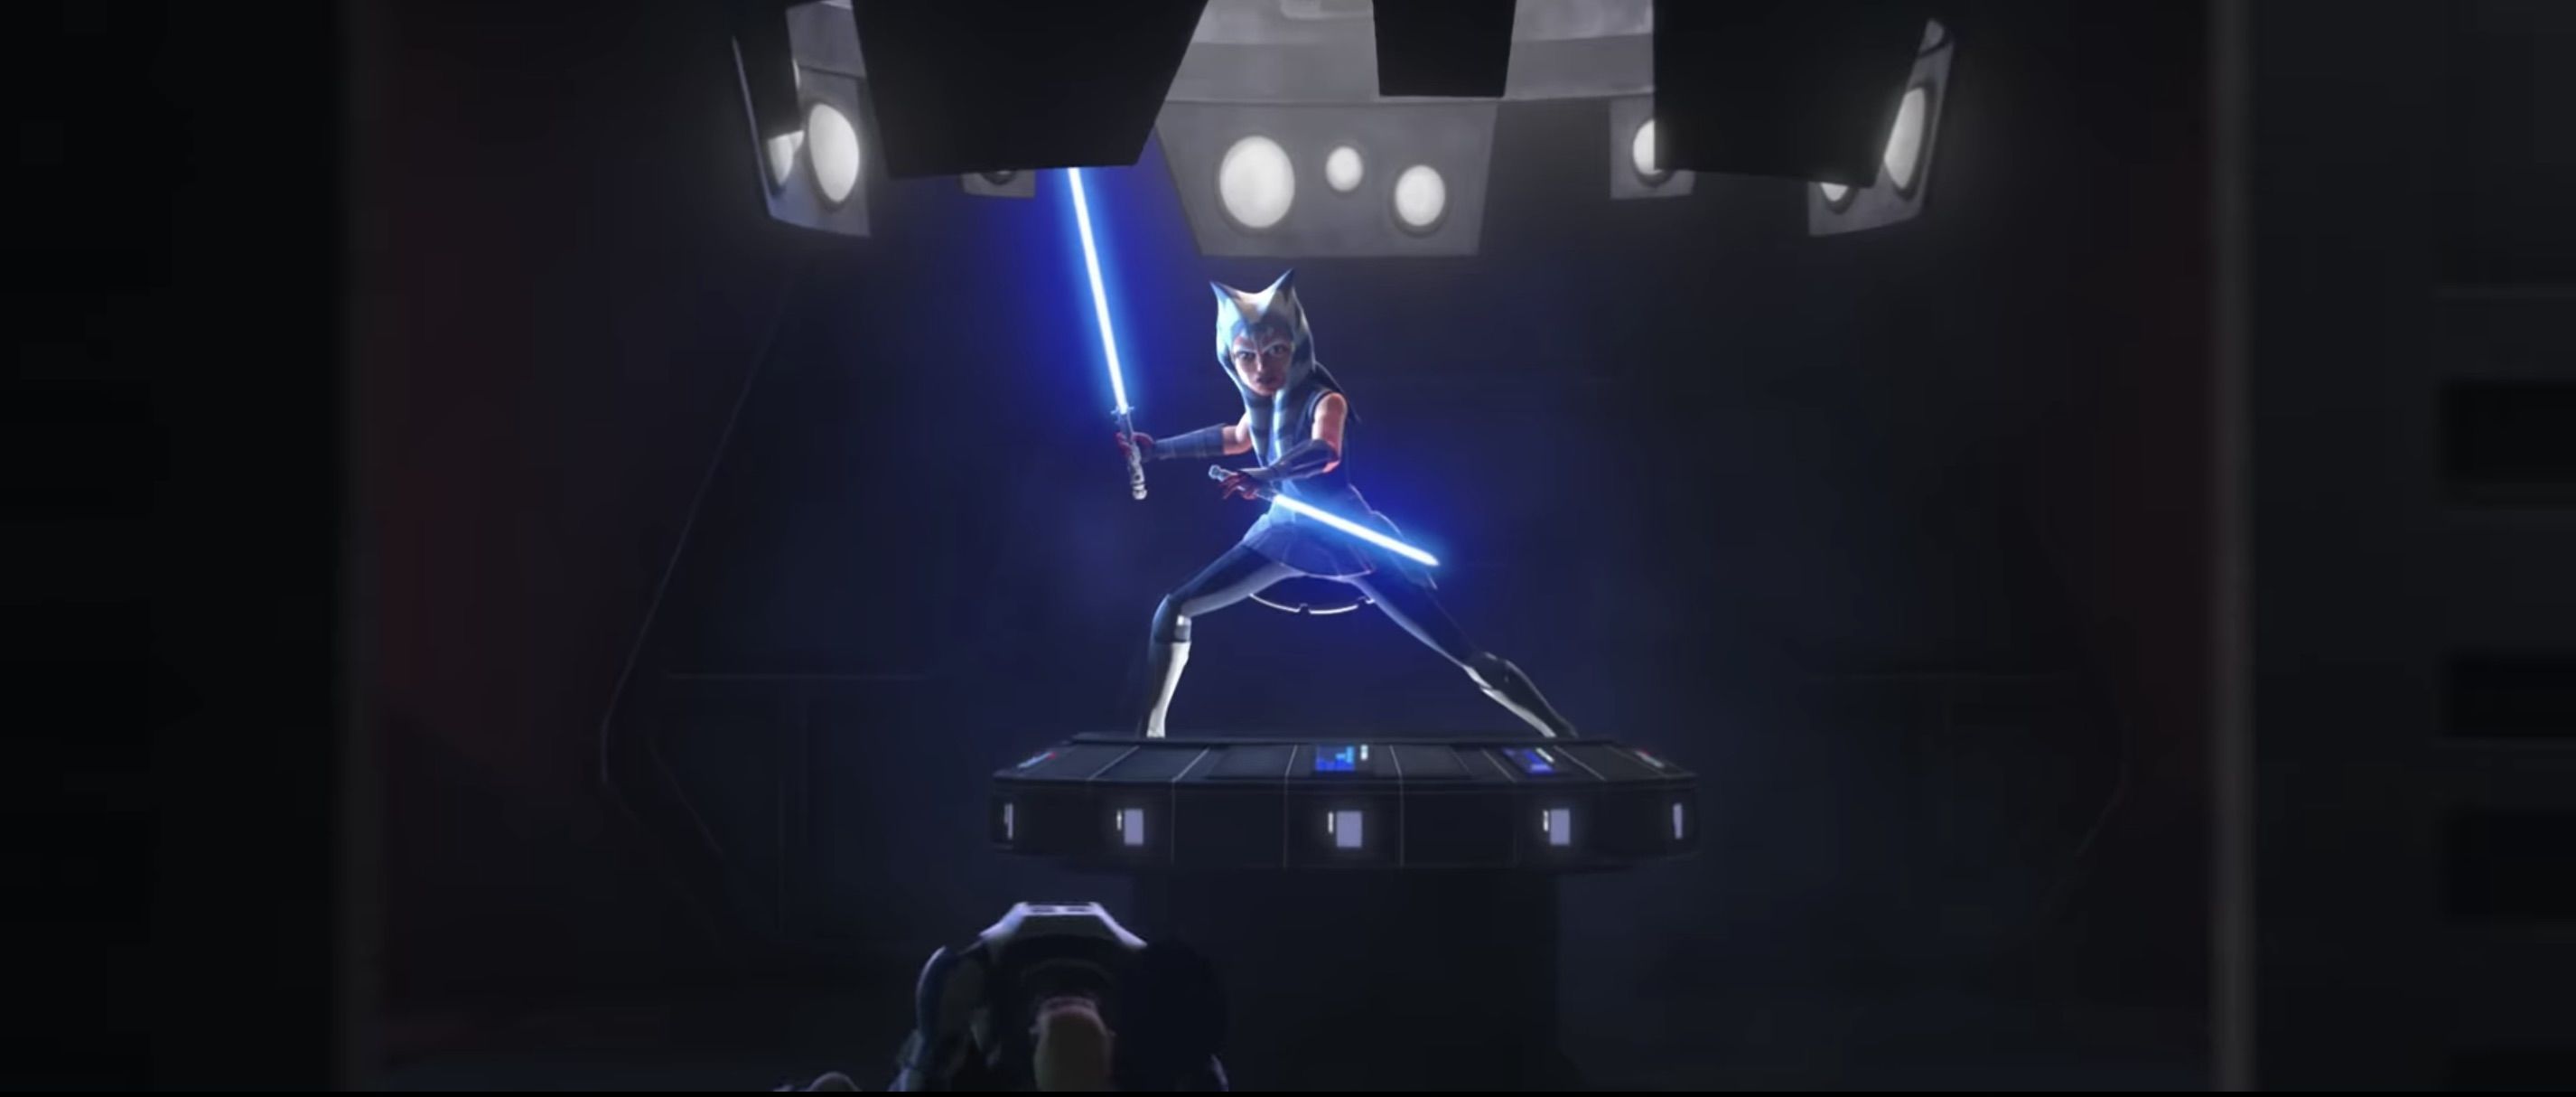 Star Wars: The Clone Wars trailer: Ahsoka fights Maul, Anakin goes Dark side